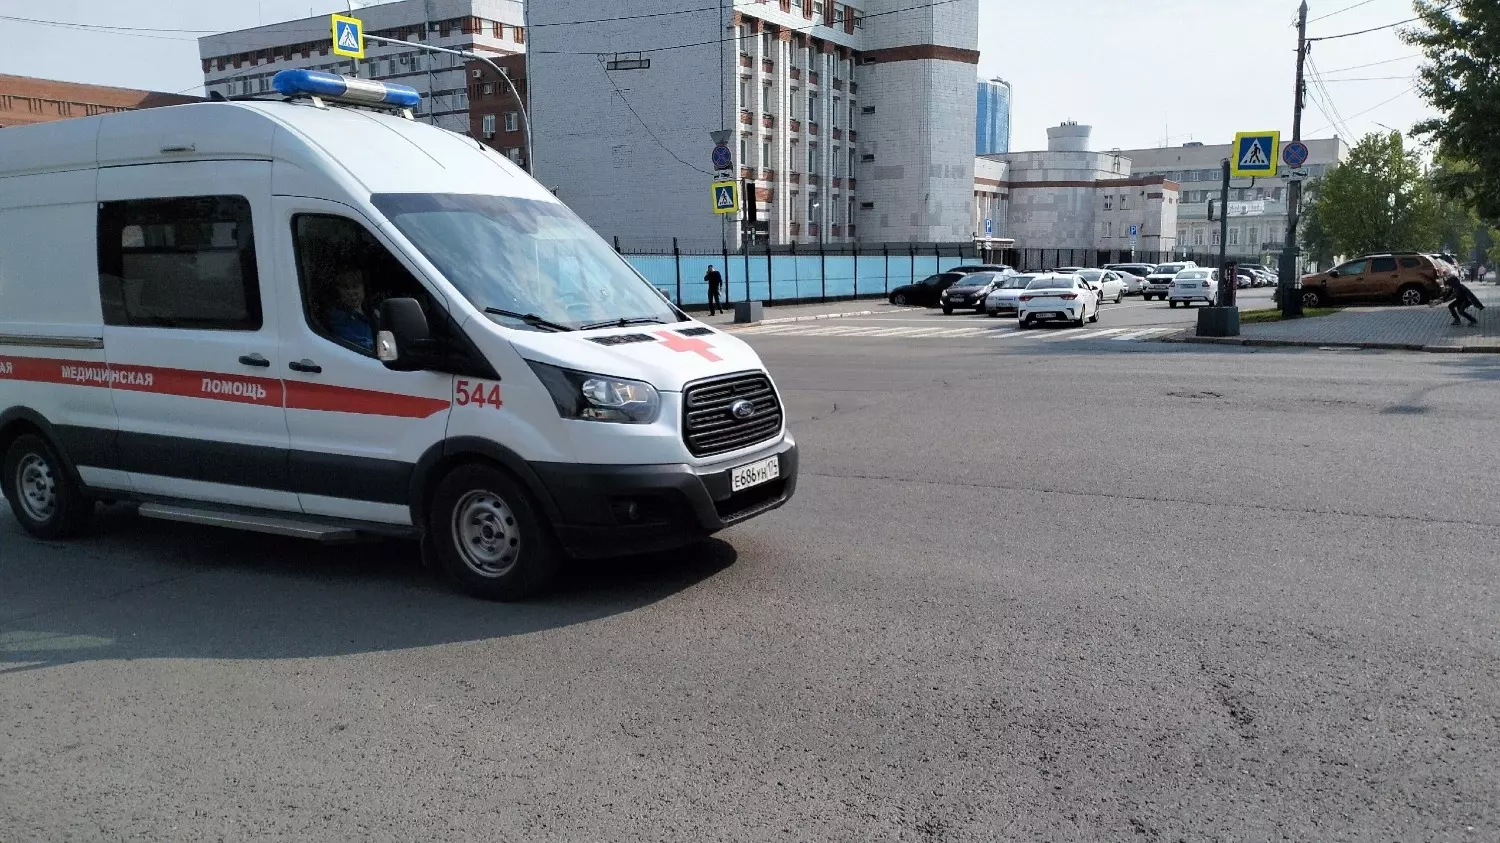 Скорая помощь на улицах Челябинска